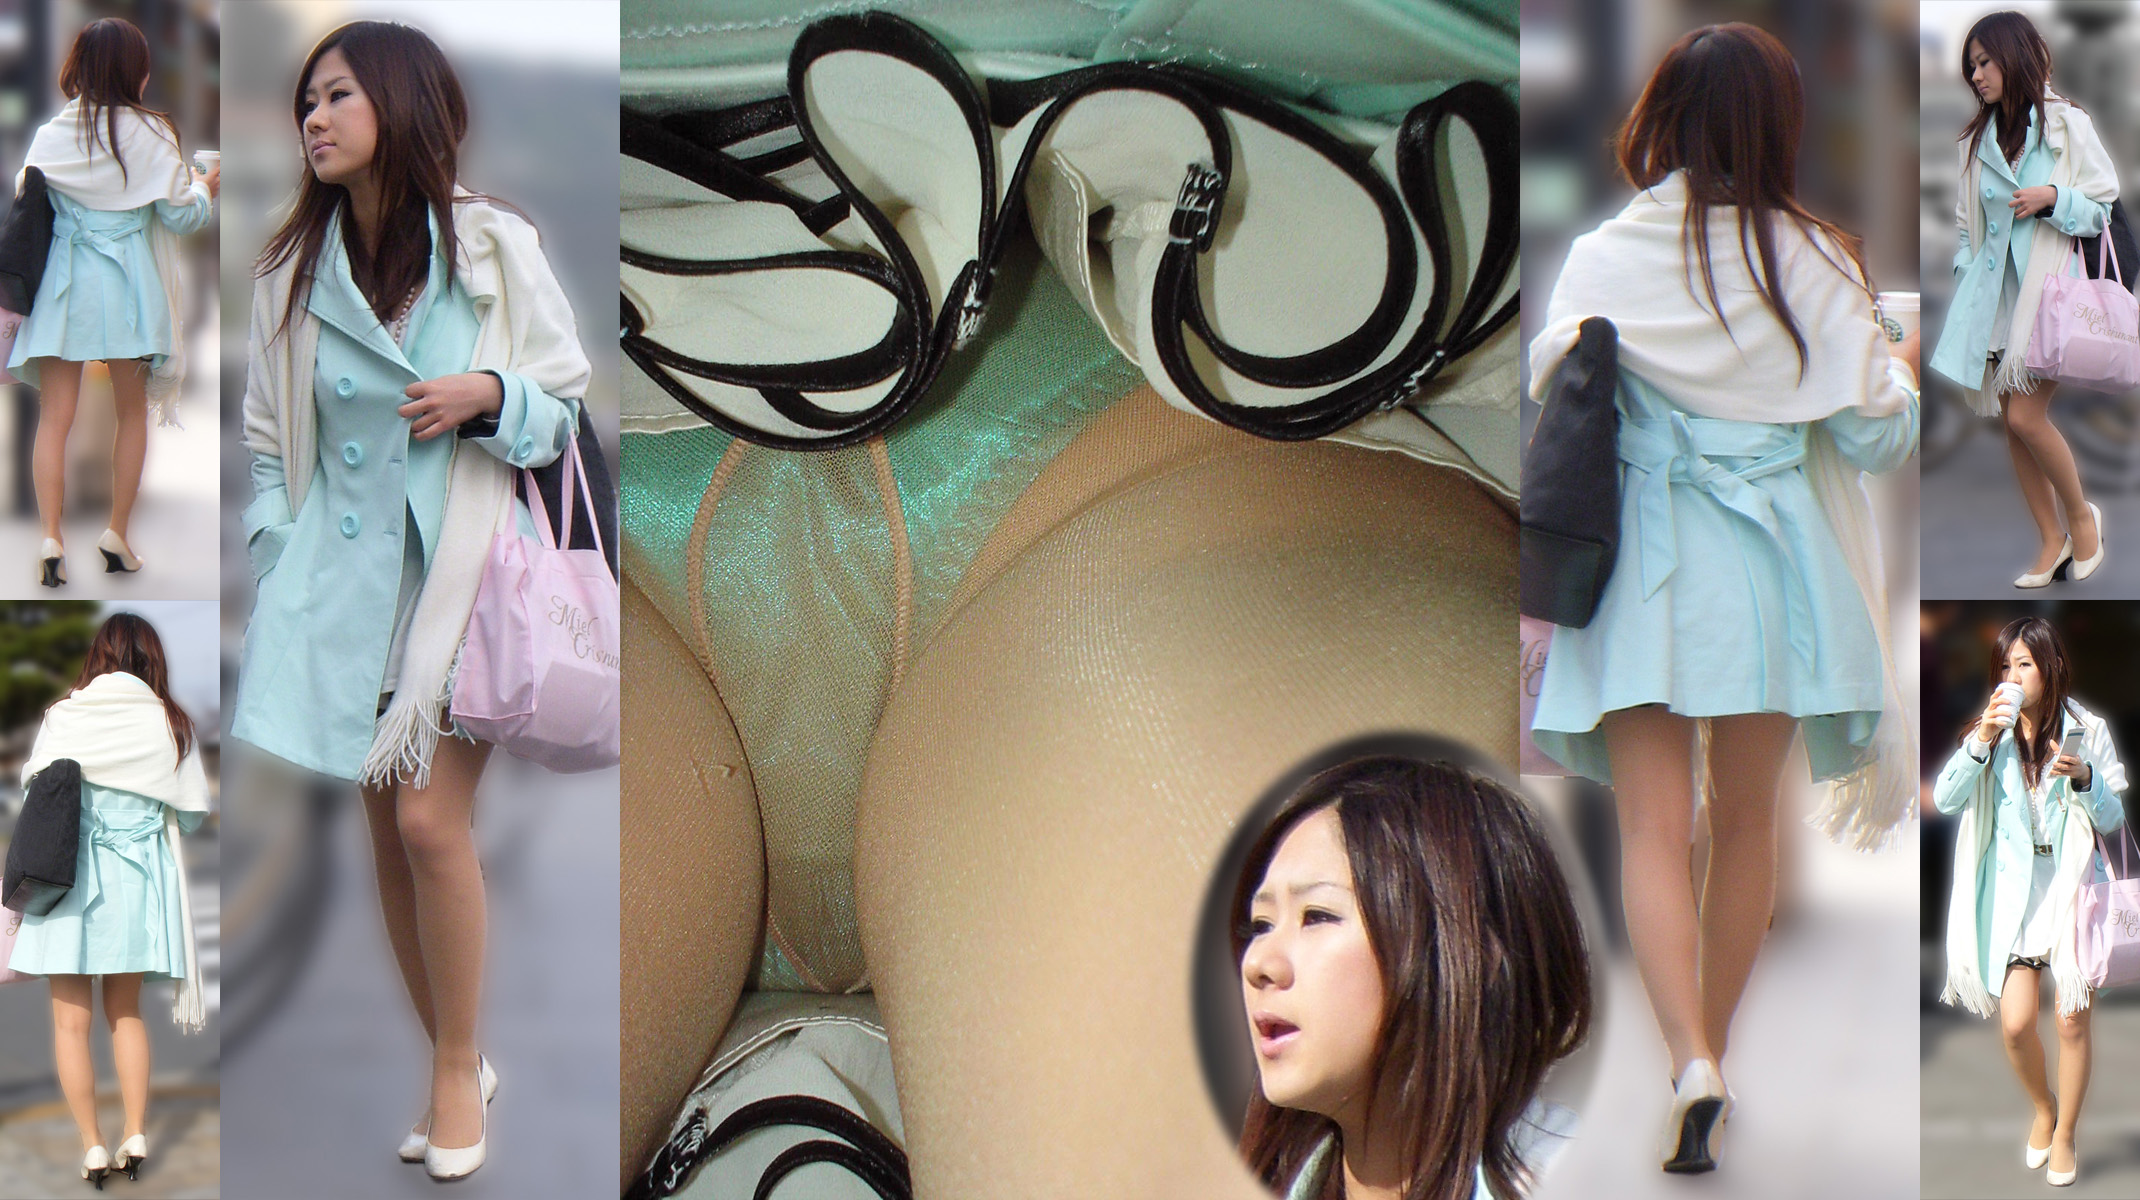 Japanese wetting panty 